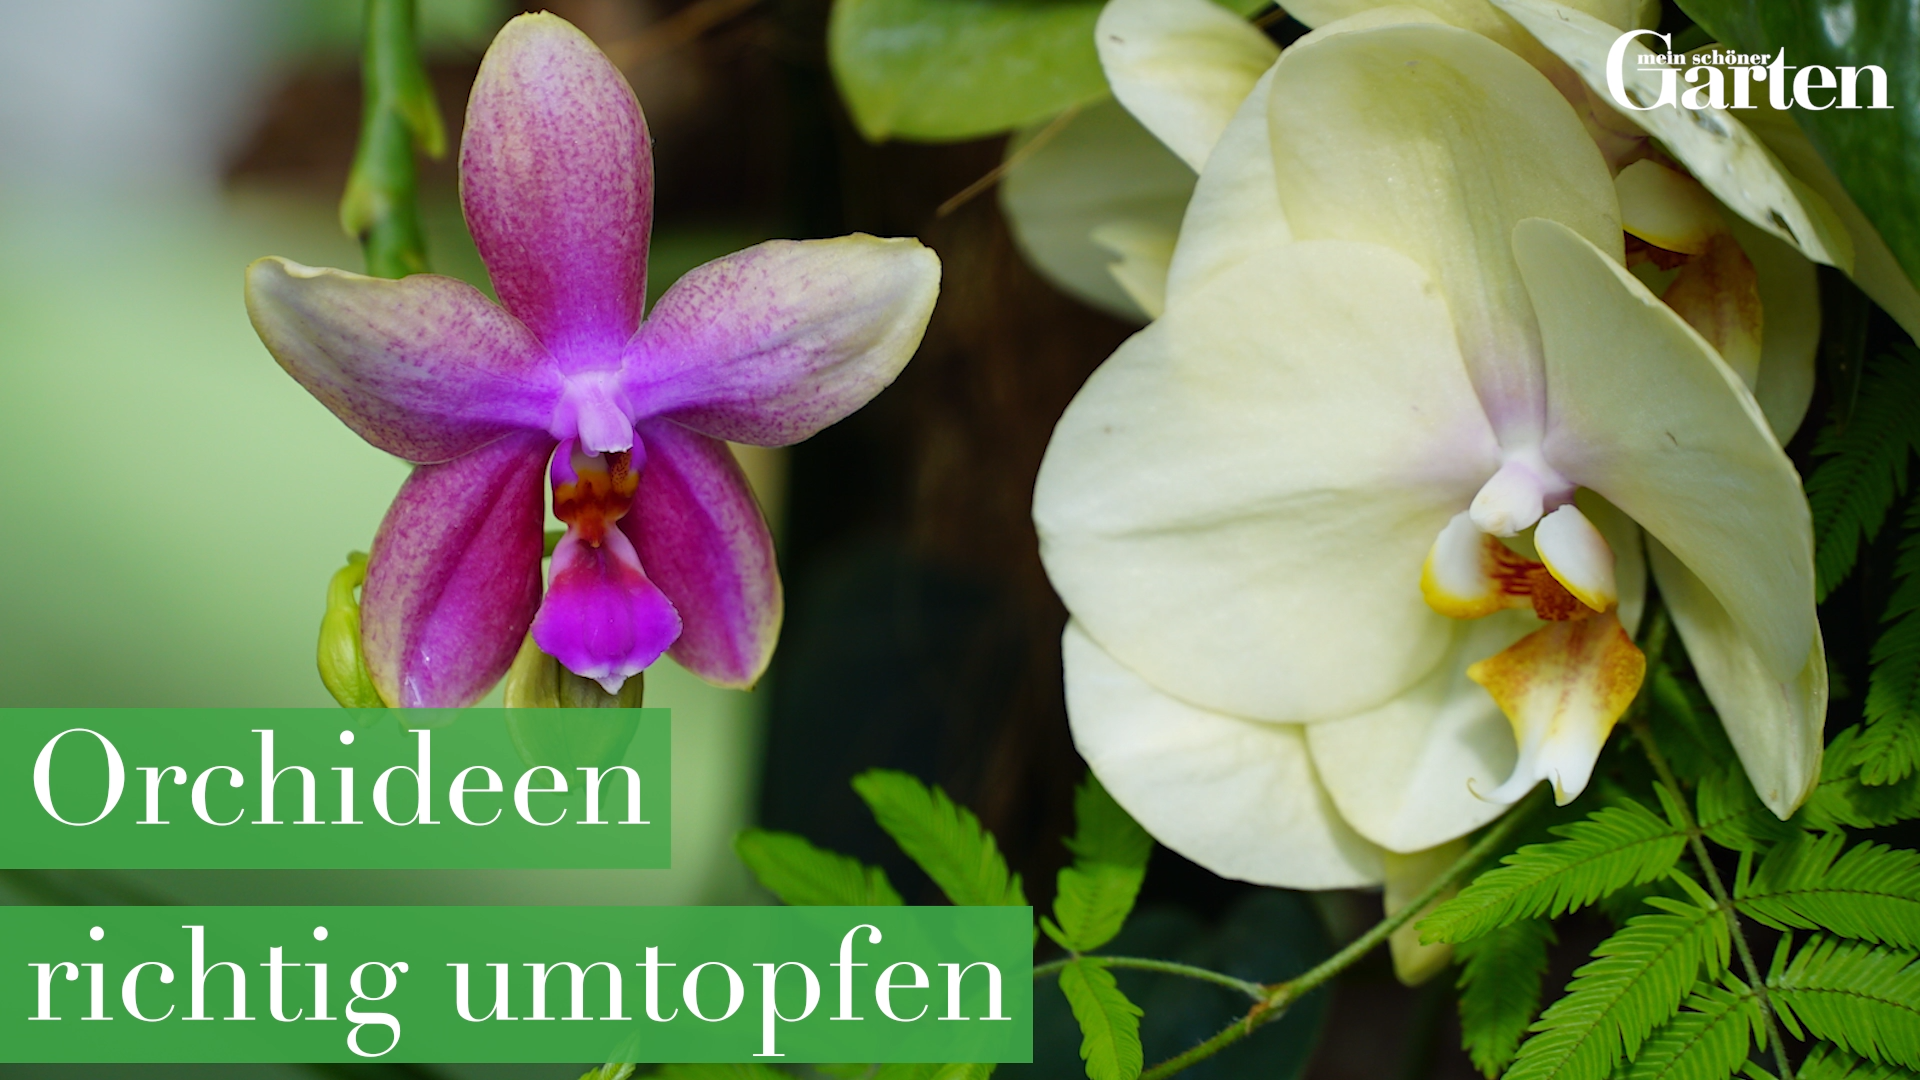 Orchideen richtig umtopfen -   19 plants Decoration design ideas